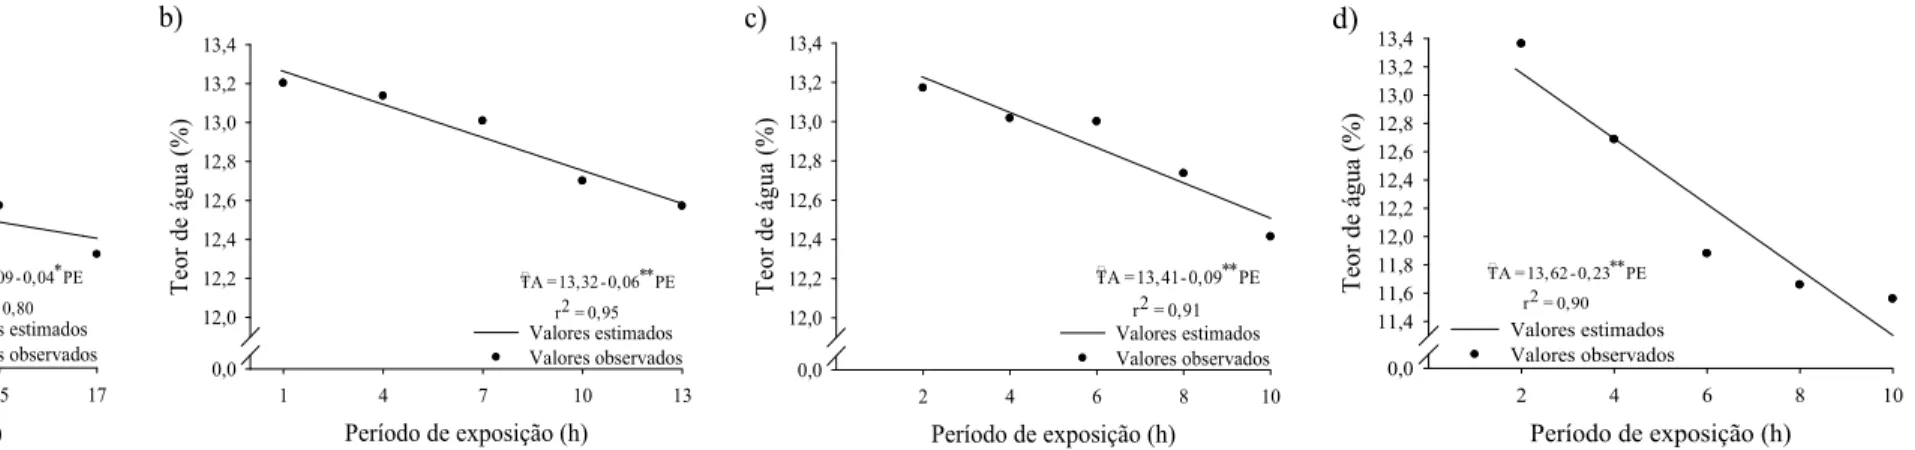 Figura 1 - Valores estimados e observados do teor de água (TA) da farinha de trigo ozonizada nas concentrações: a) 0,54 mg L -1 ; b) 1,07 mg L -1 ; c) 1,61 mg  L -1 ; e d) 2,14 mg L -1  em função do período de exposição ao gás (PE)